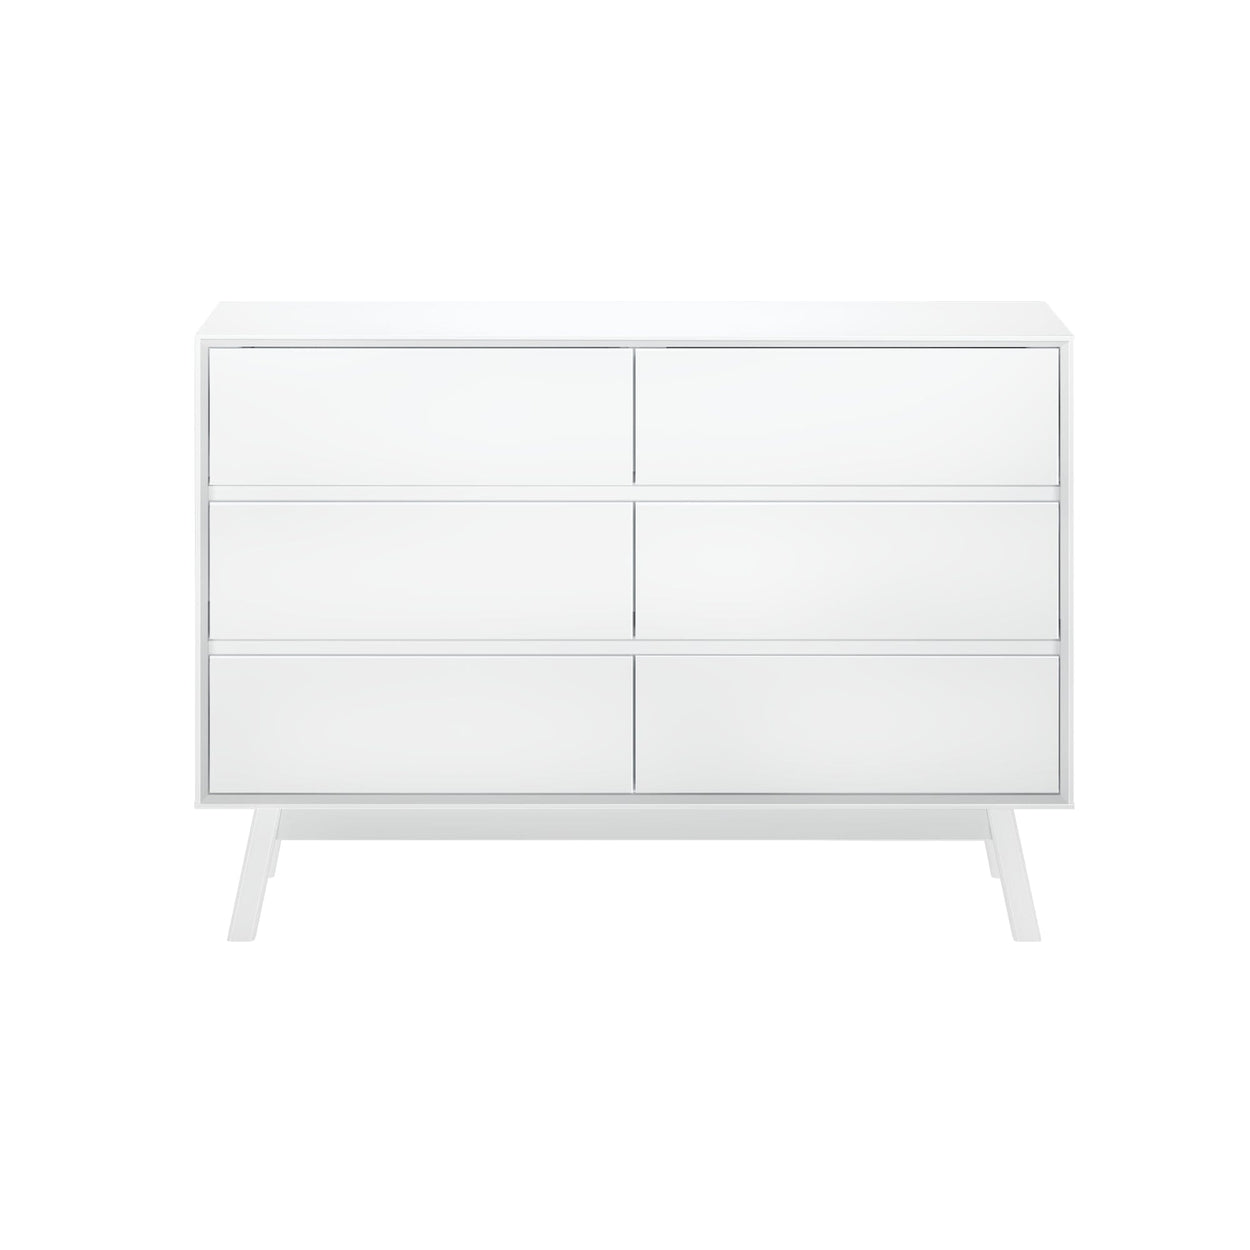 200006-002 : Furniture Mid-Century Modern 6-Drawer Dresser, White